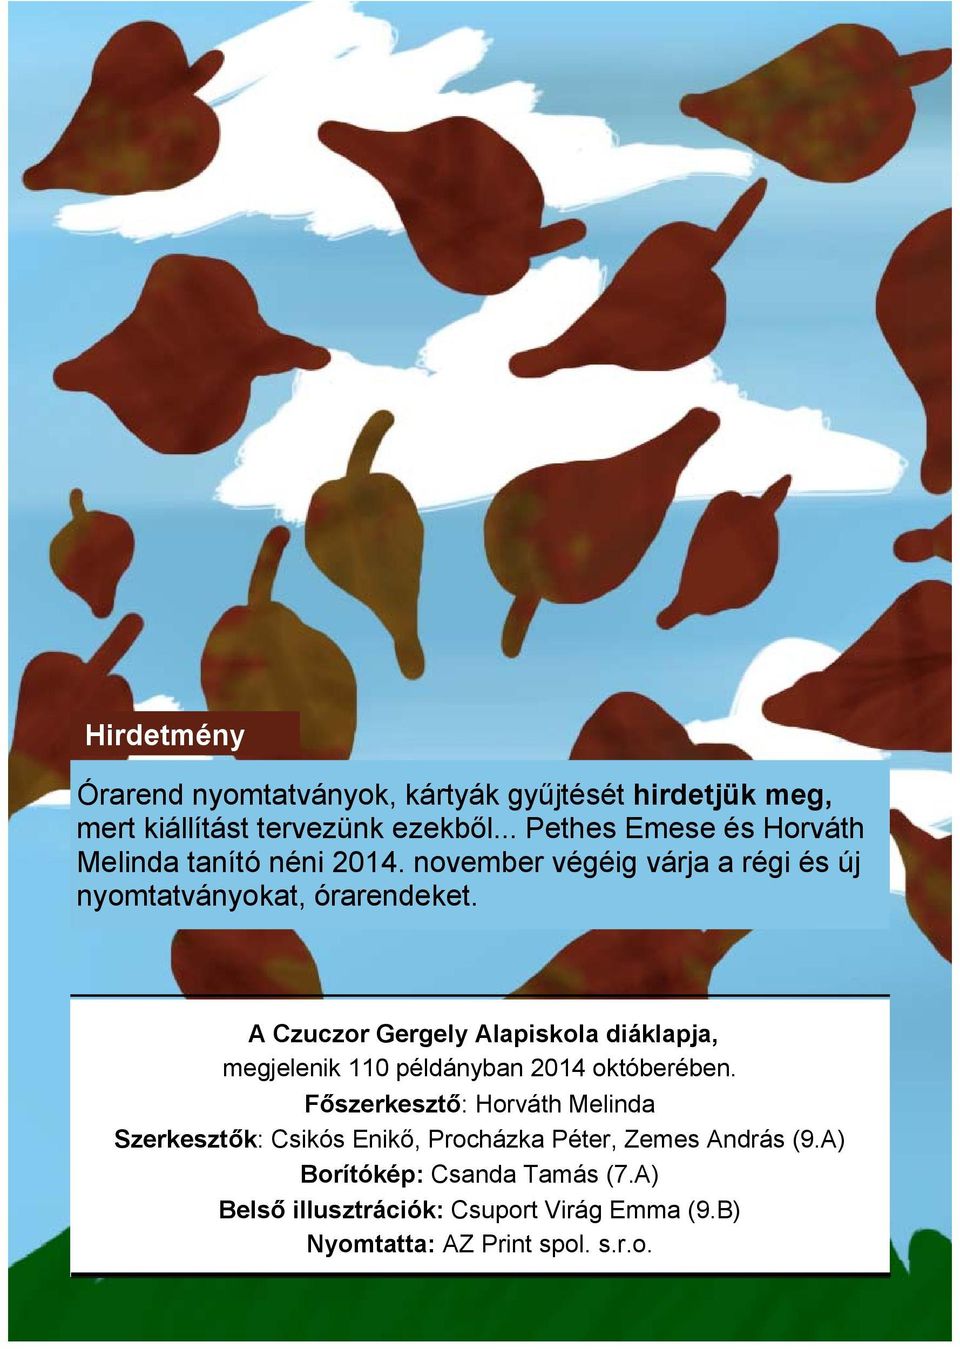 A Czuczor Gergely Alapiskola diáklapja, megjelenik 110 példányban 2014 októberében.